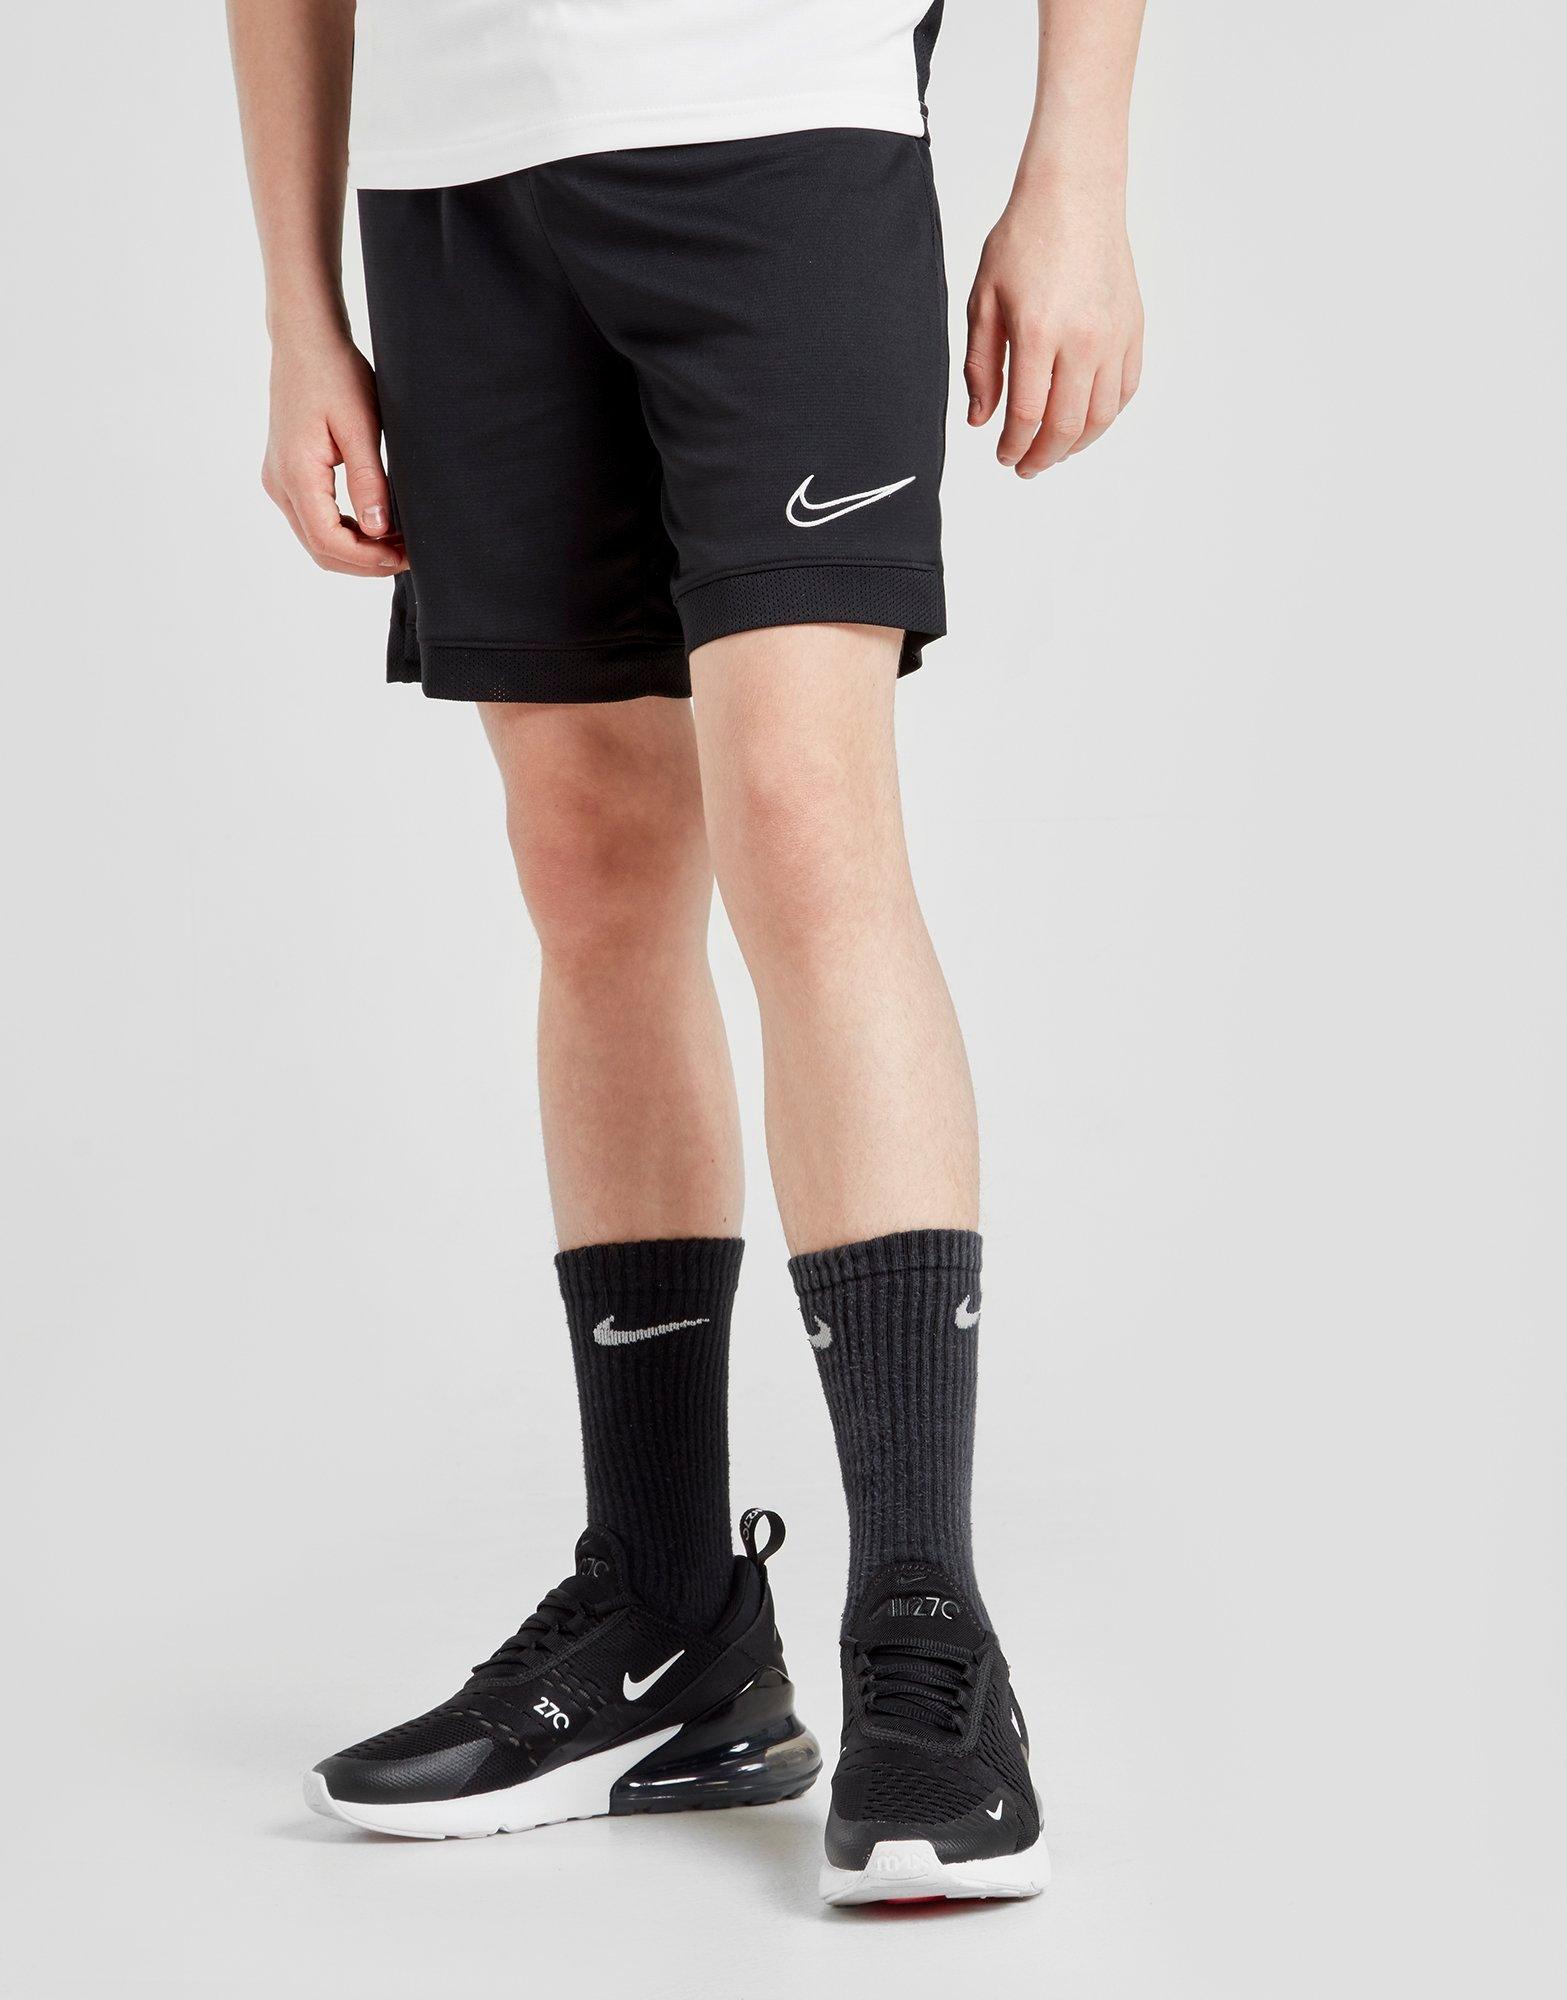 boys nike soccer shorts